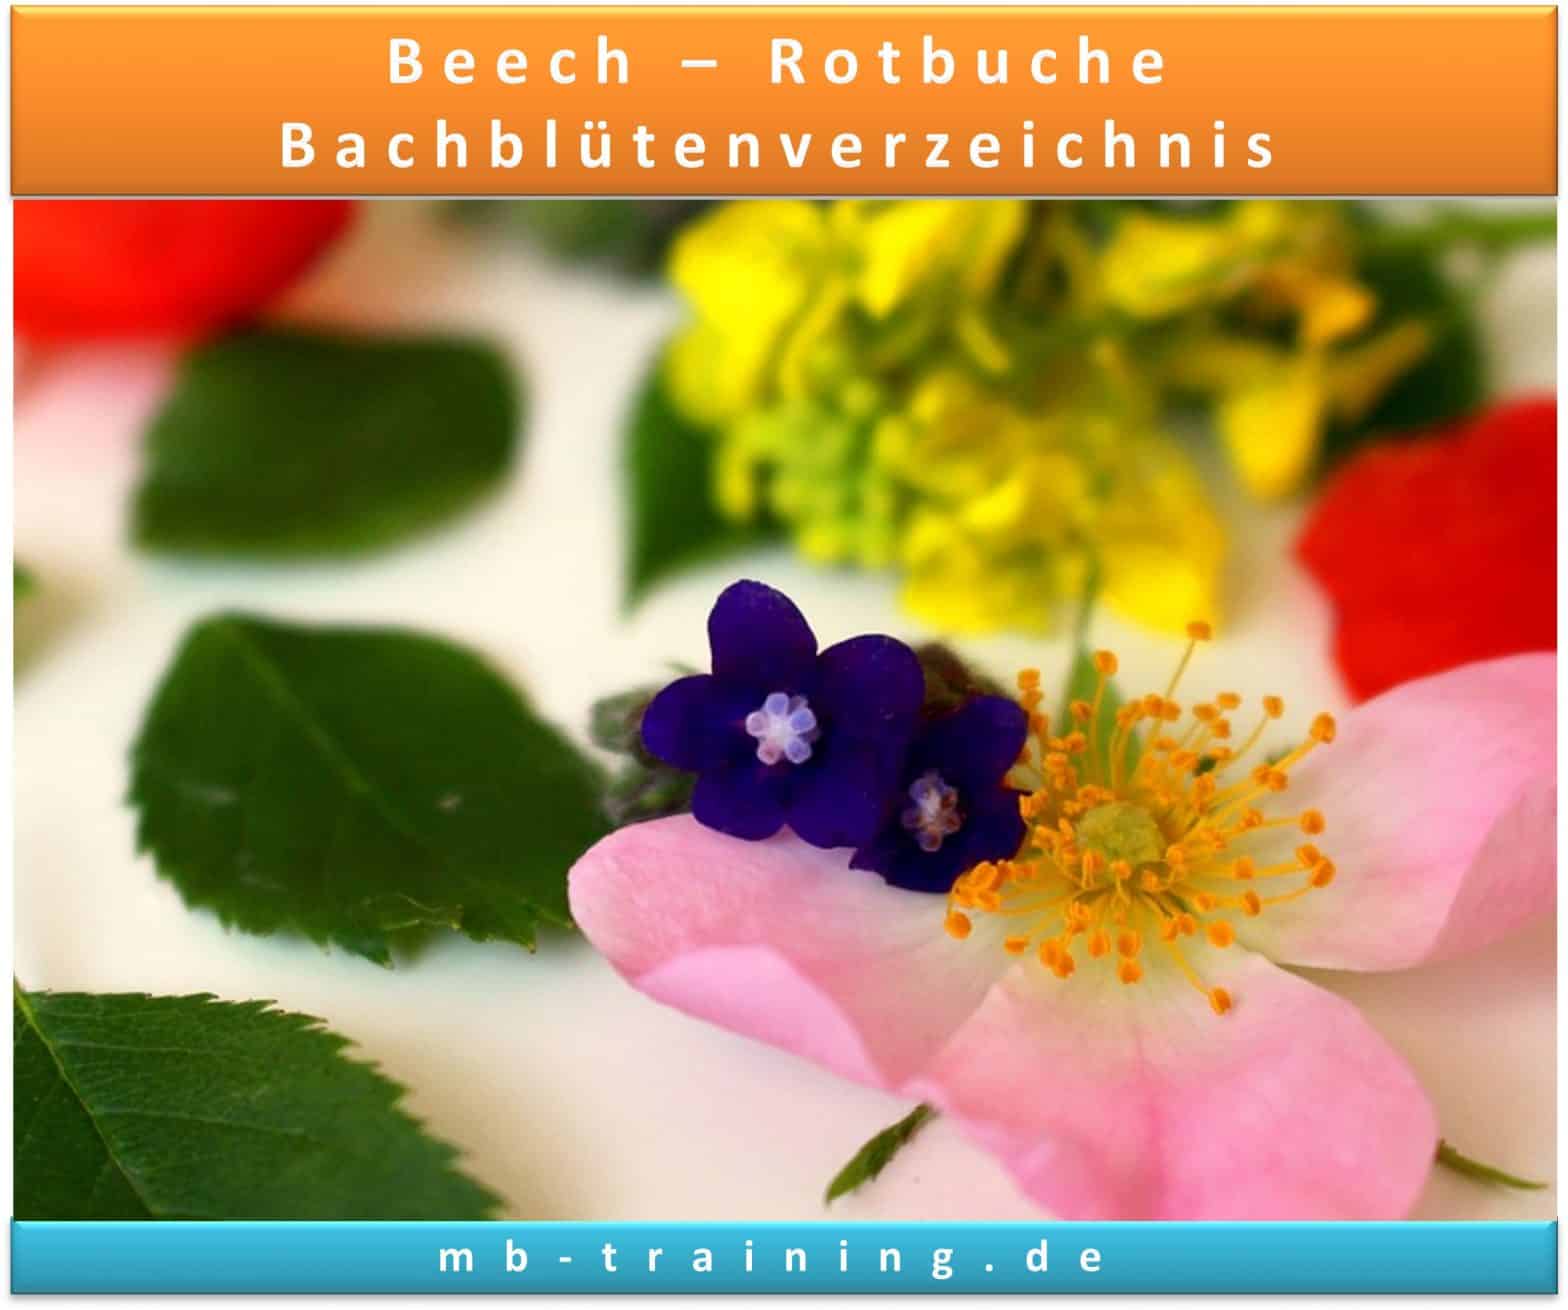 Heilen Sie Körper & Seele mit Beech, Rotbuche: Lernen Sie mehr im Bachblüten Verzeichnis, Anwendung und Beschwerden in der Bachblütentherapie. Jetzt entdecken!